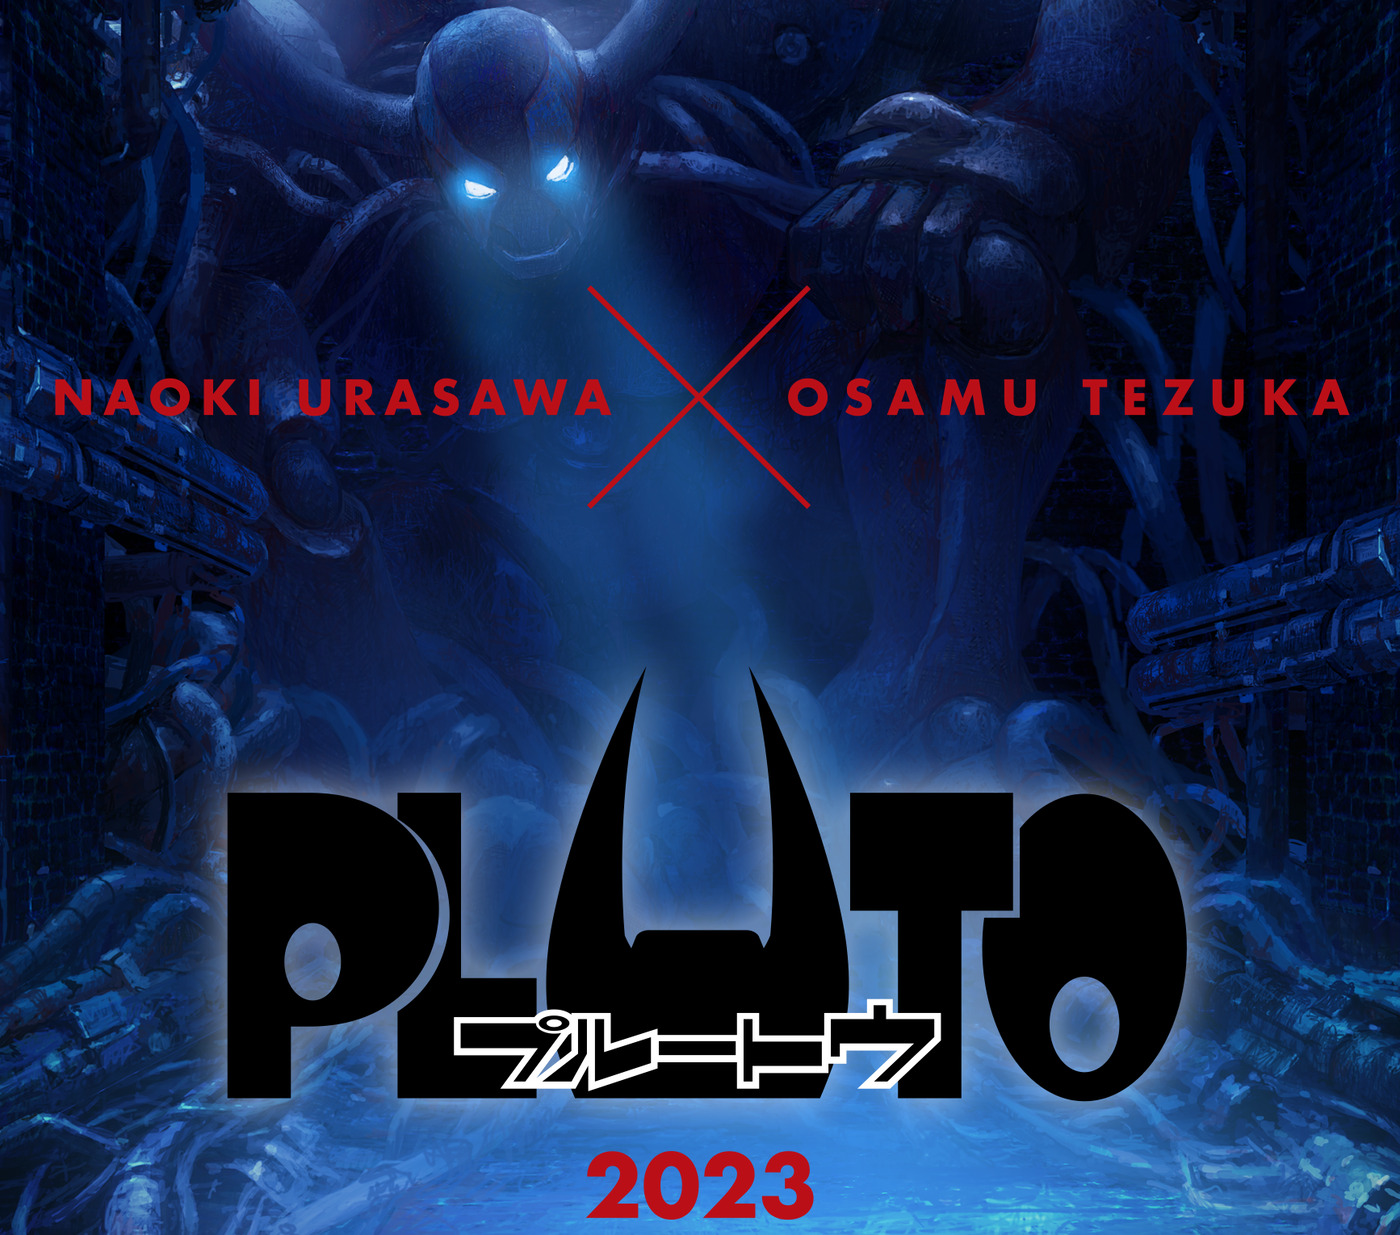 Guerra e racismo são os temas de 'Pluto', melhor anime de 2023